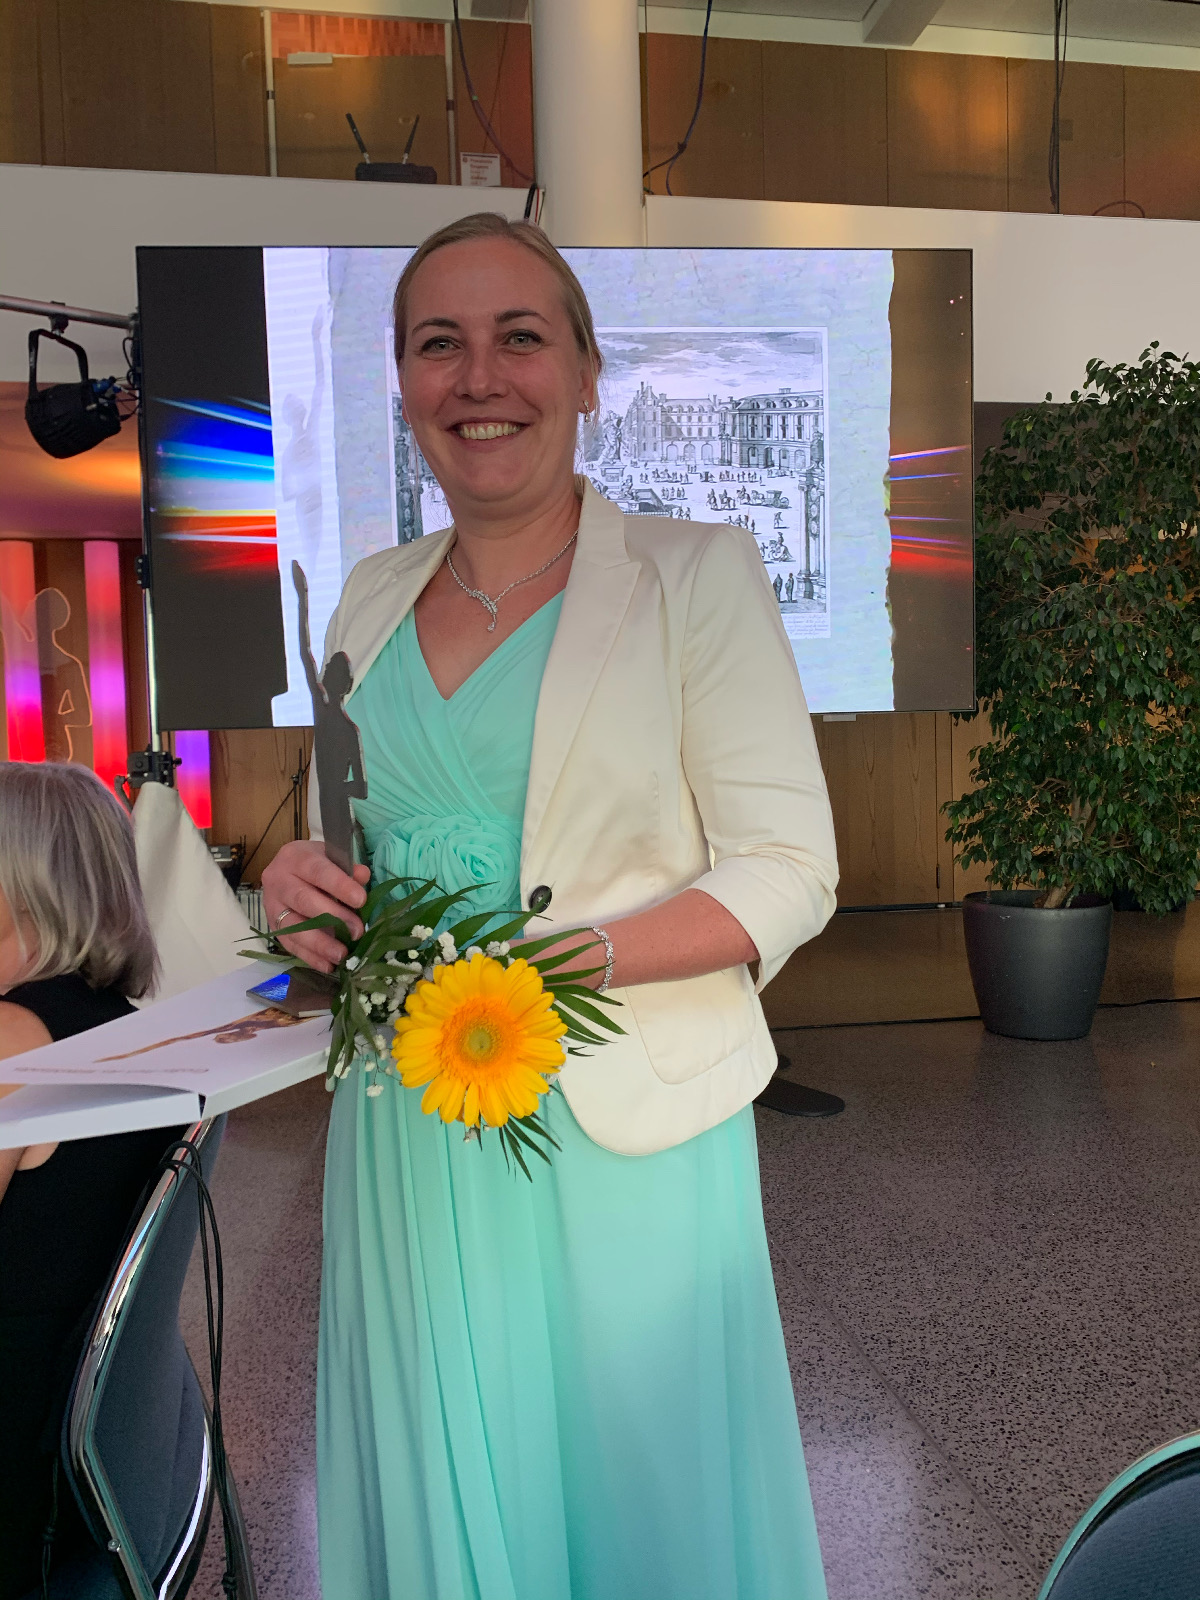 Sandra Zander, Geschäftsführerin IBH IT-Service GmbH - Auszeichnung "Finalist" Großer Preis des Mittelstandes 2020